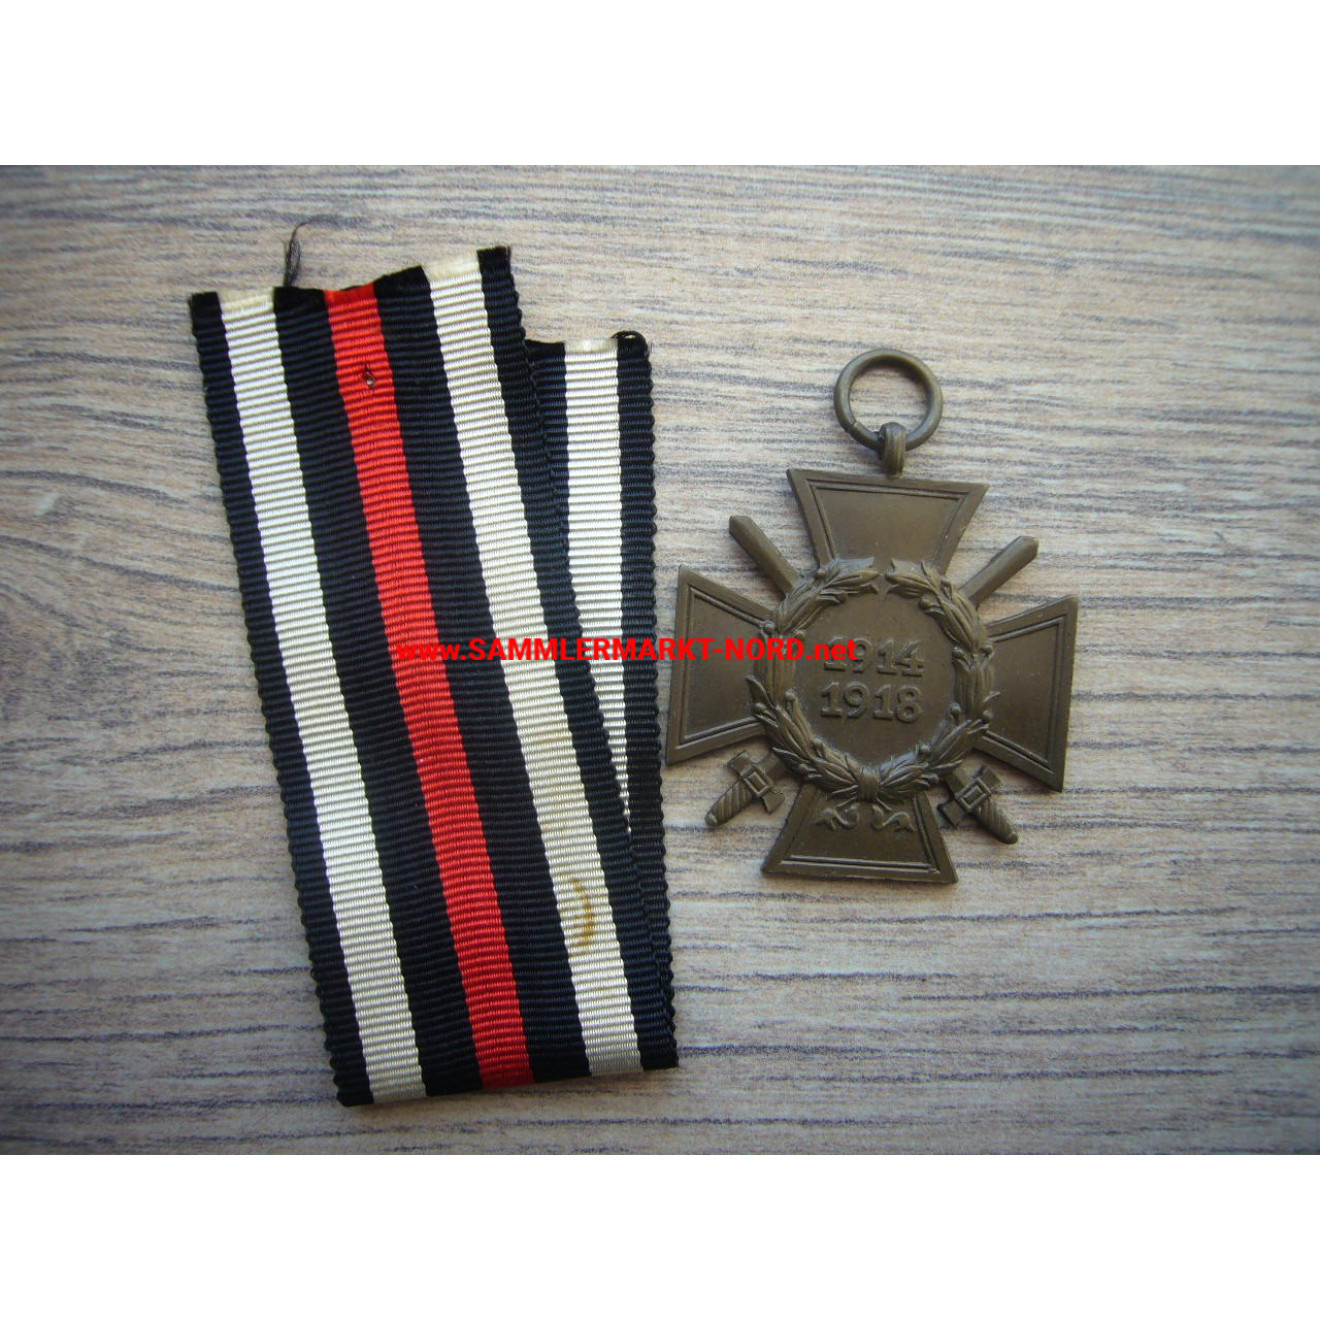 Ehrenkreuz für Frontkämpfer 1914-1918